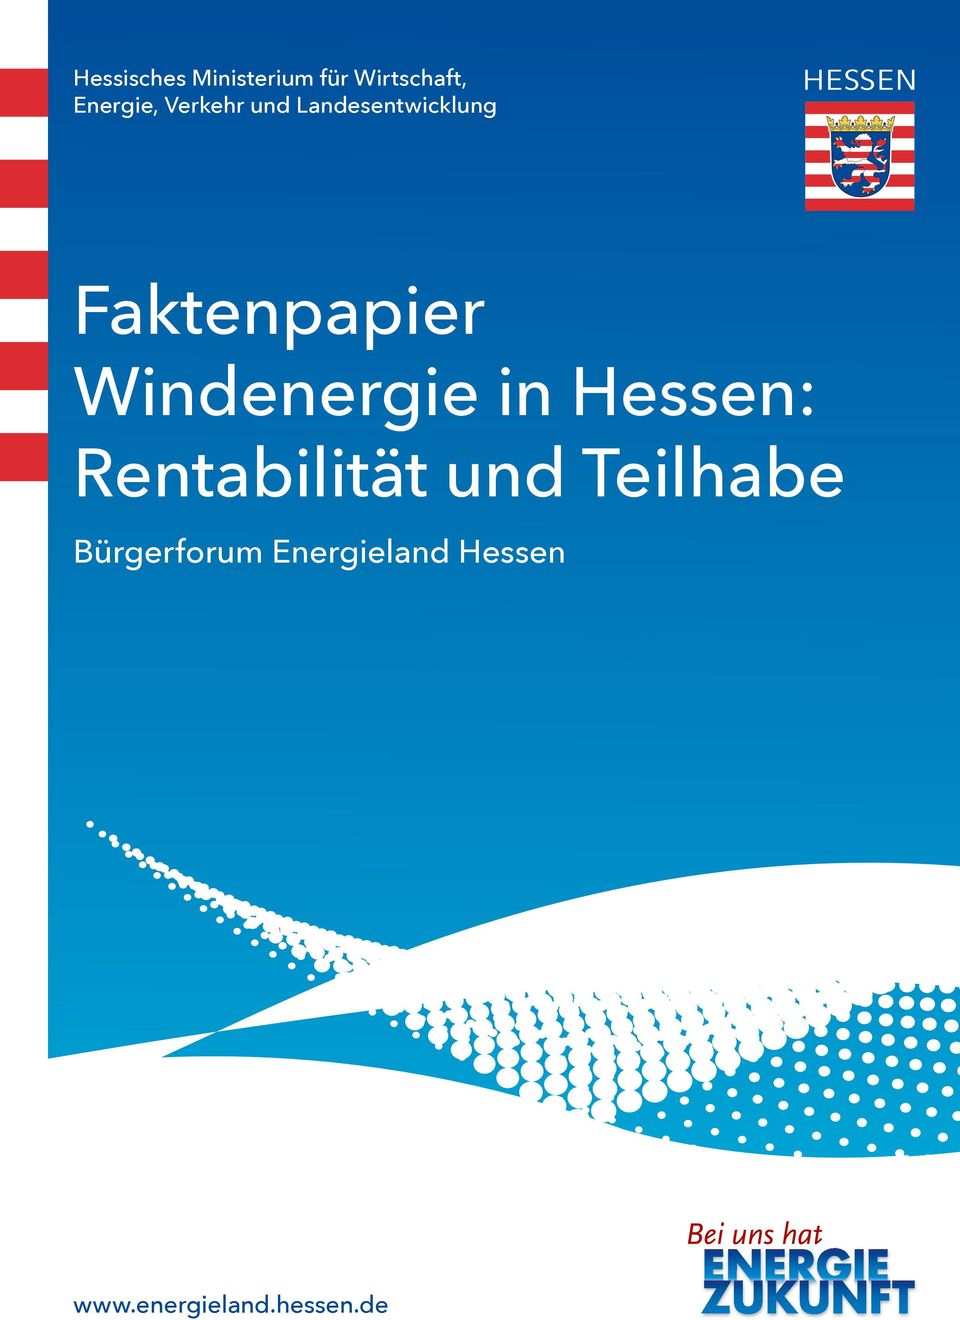 Windenergie in Hessen: Rentabilität und Teilhabe